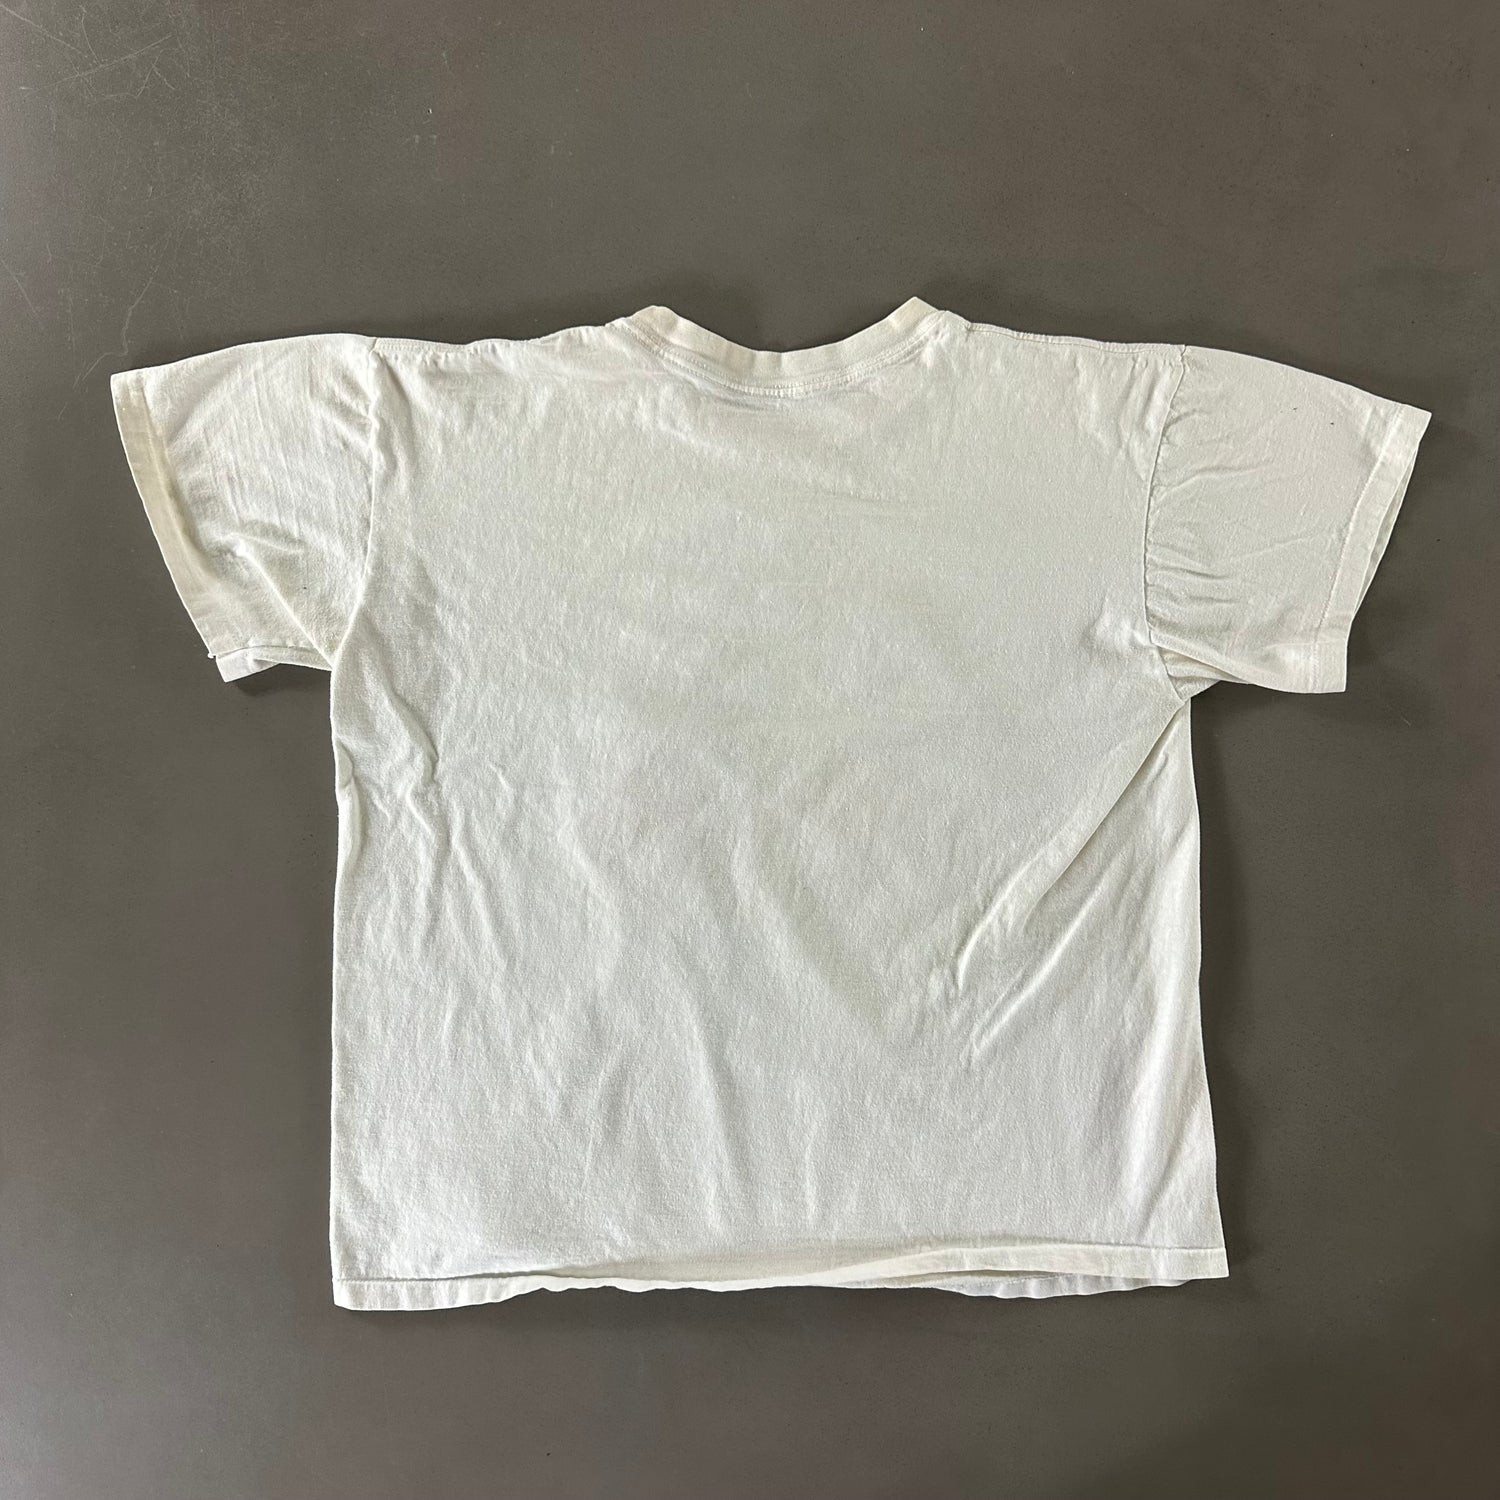 Vintage 1990s Busch Gardens T-shirt size XL